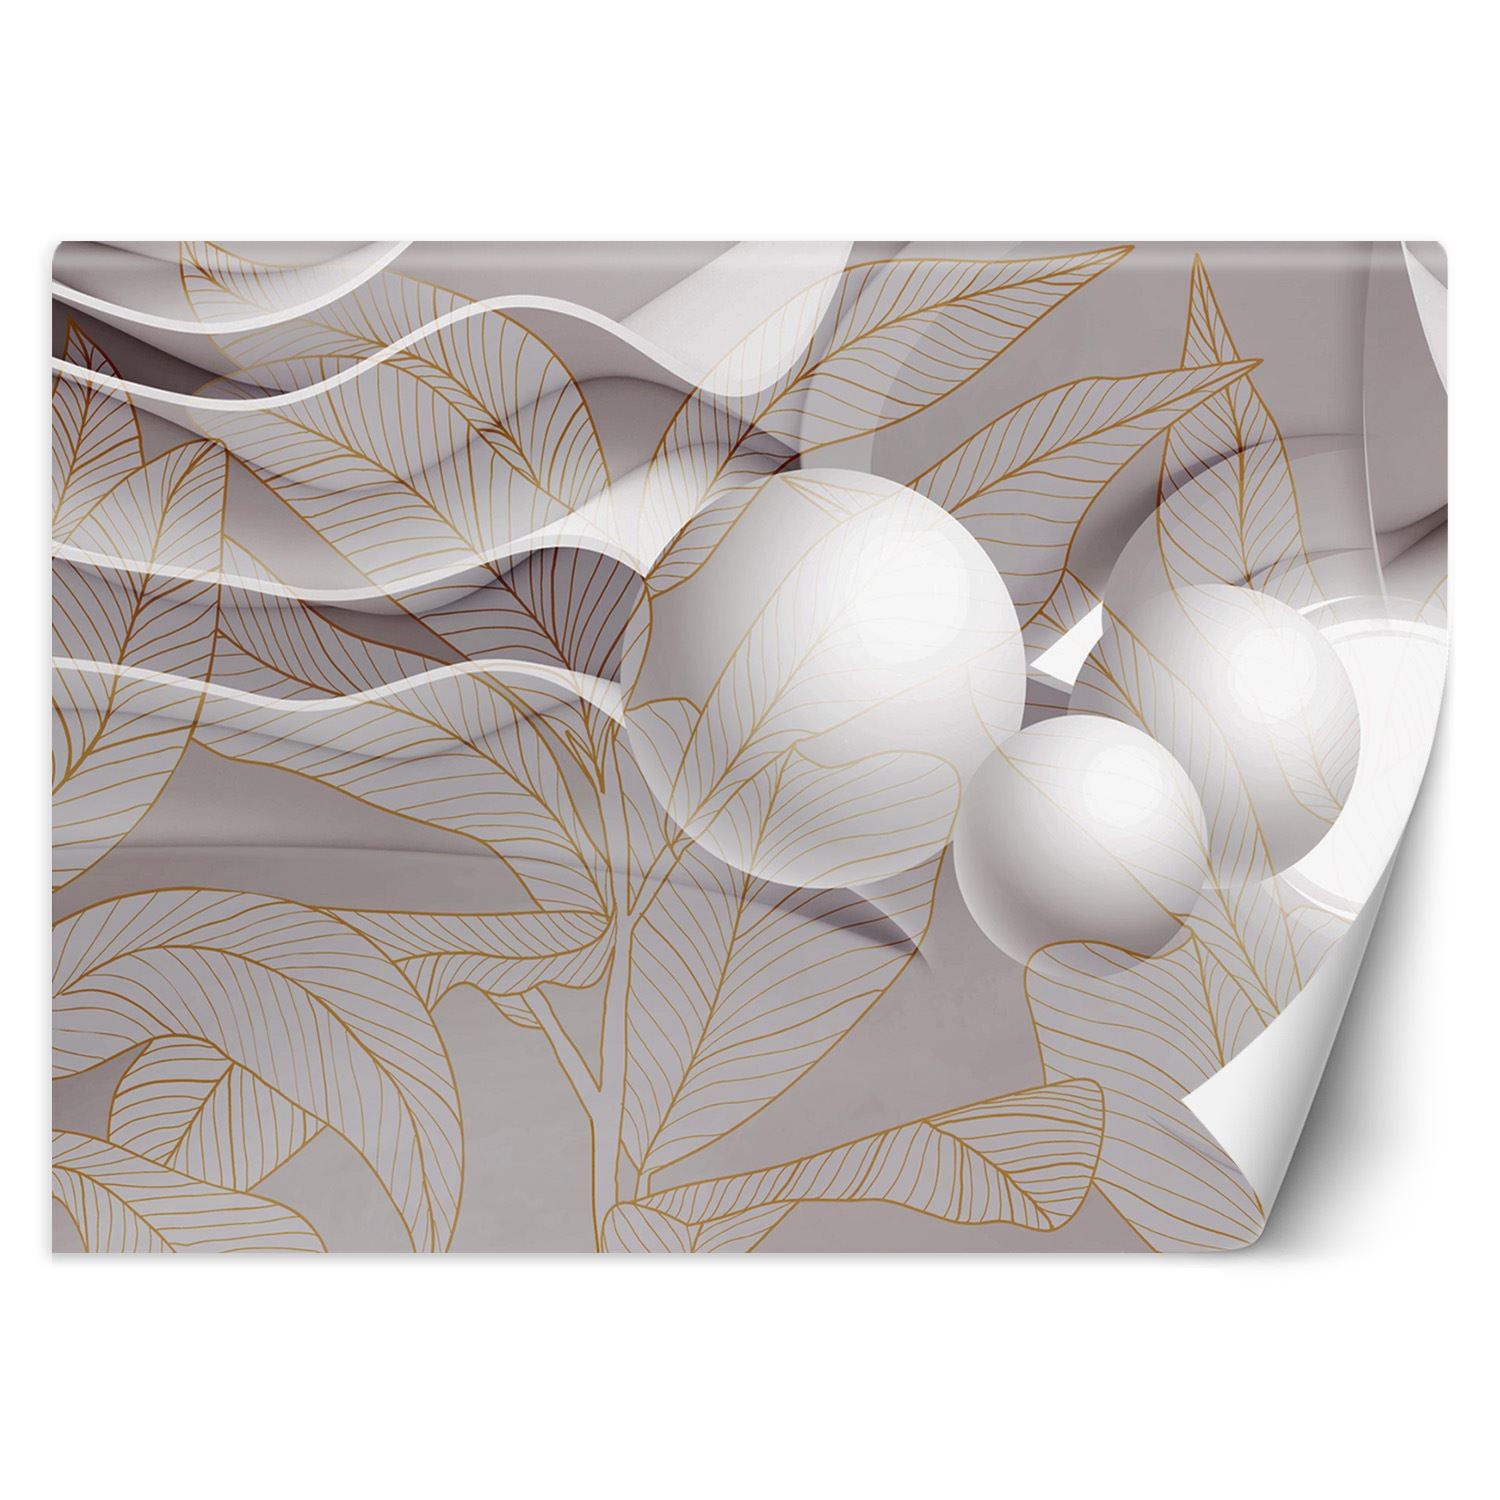 Trend24 – Behang – Goudbladeren En Bollen 3D – Behangpapier – Fotobehang 3D – Behang Woonkamer – 250x175x2 cm – Incl. behanglijm